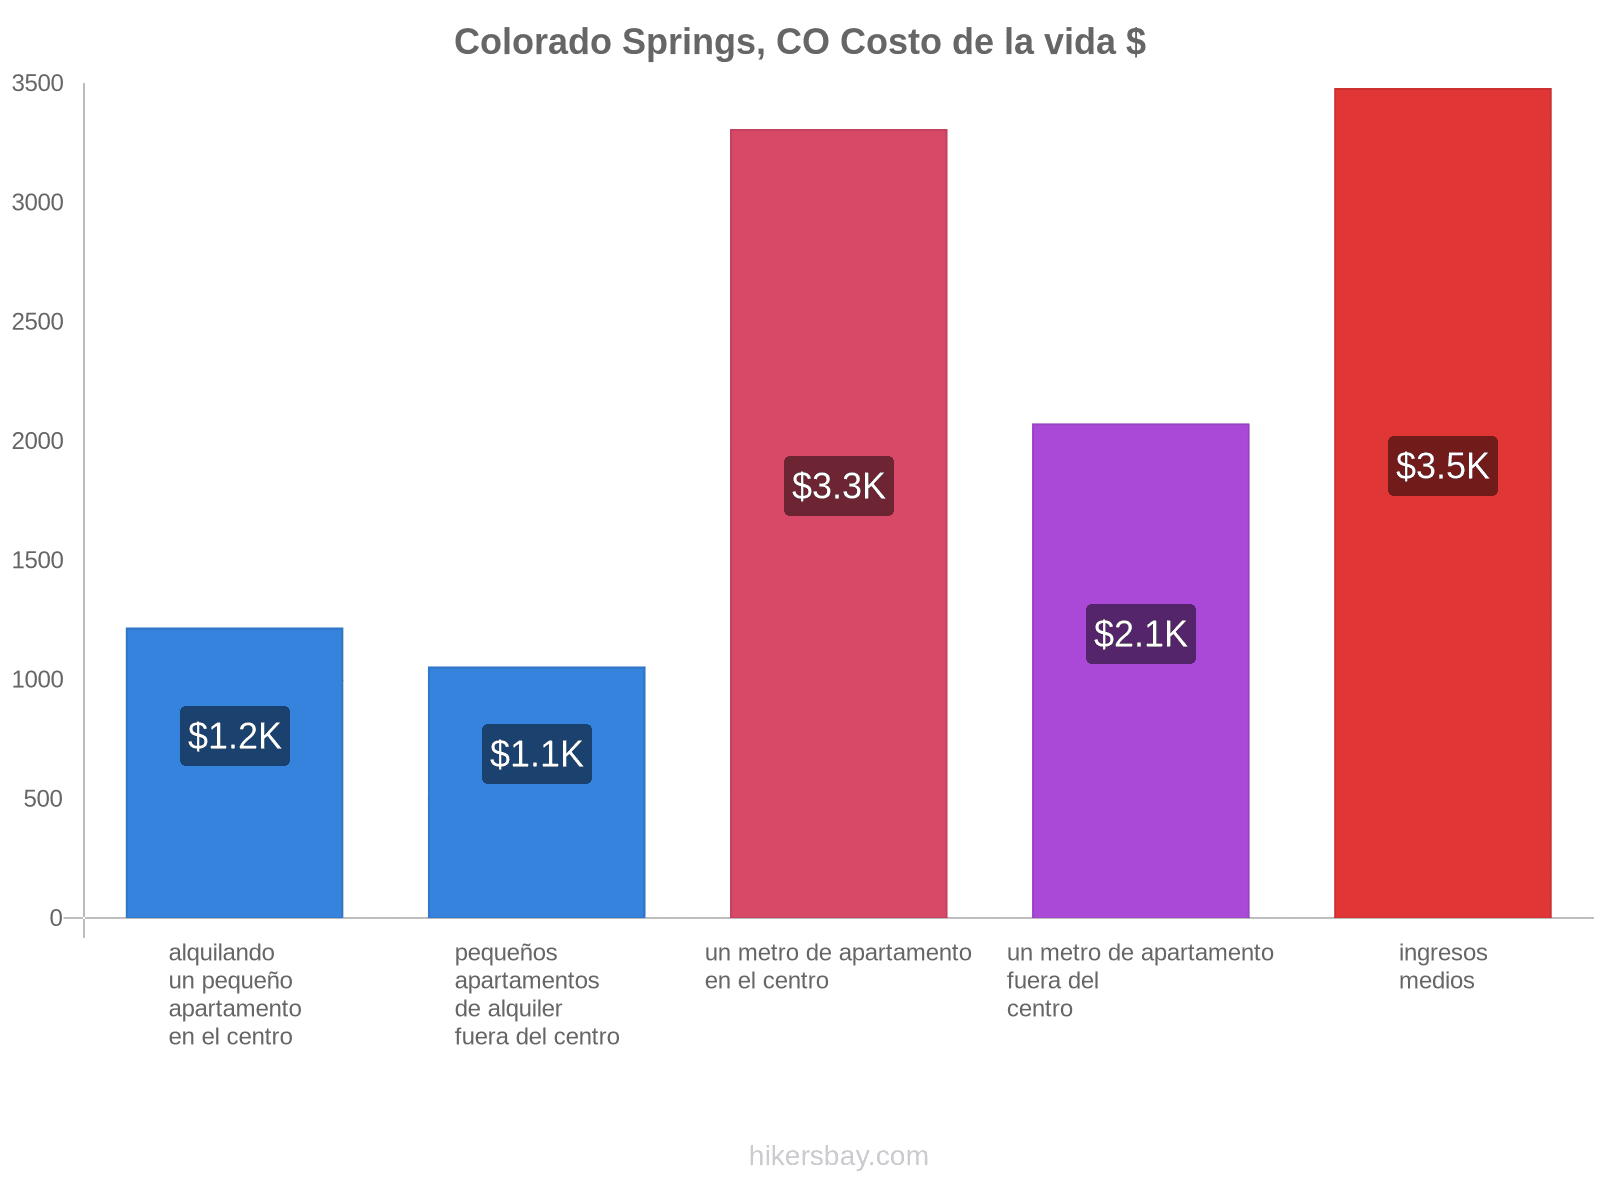 Colorado Springs, CO costo de la vida hikersbay.com